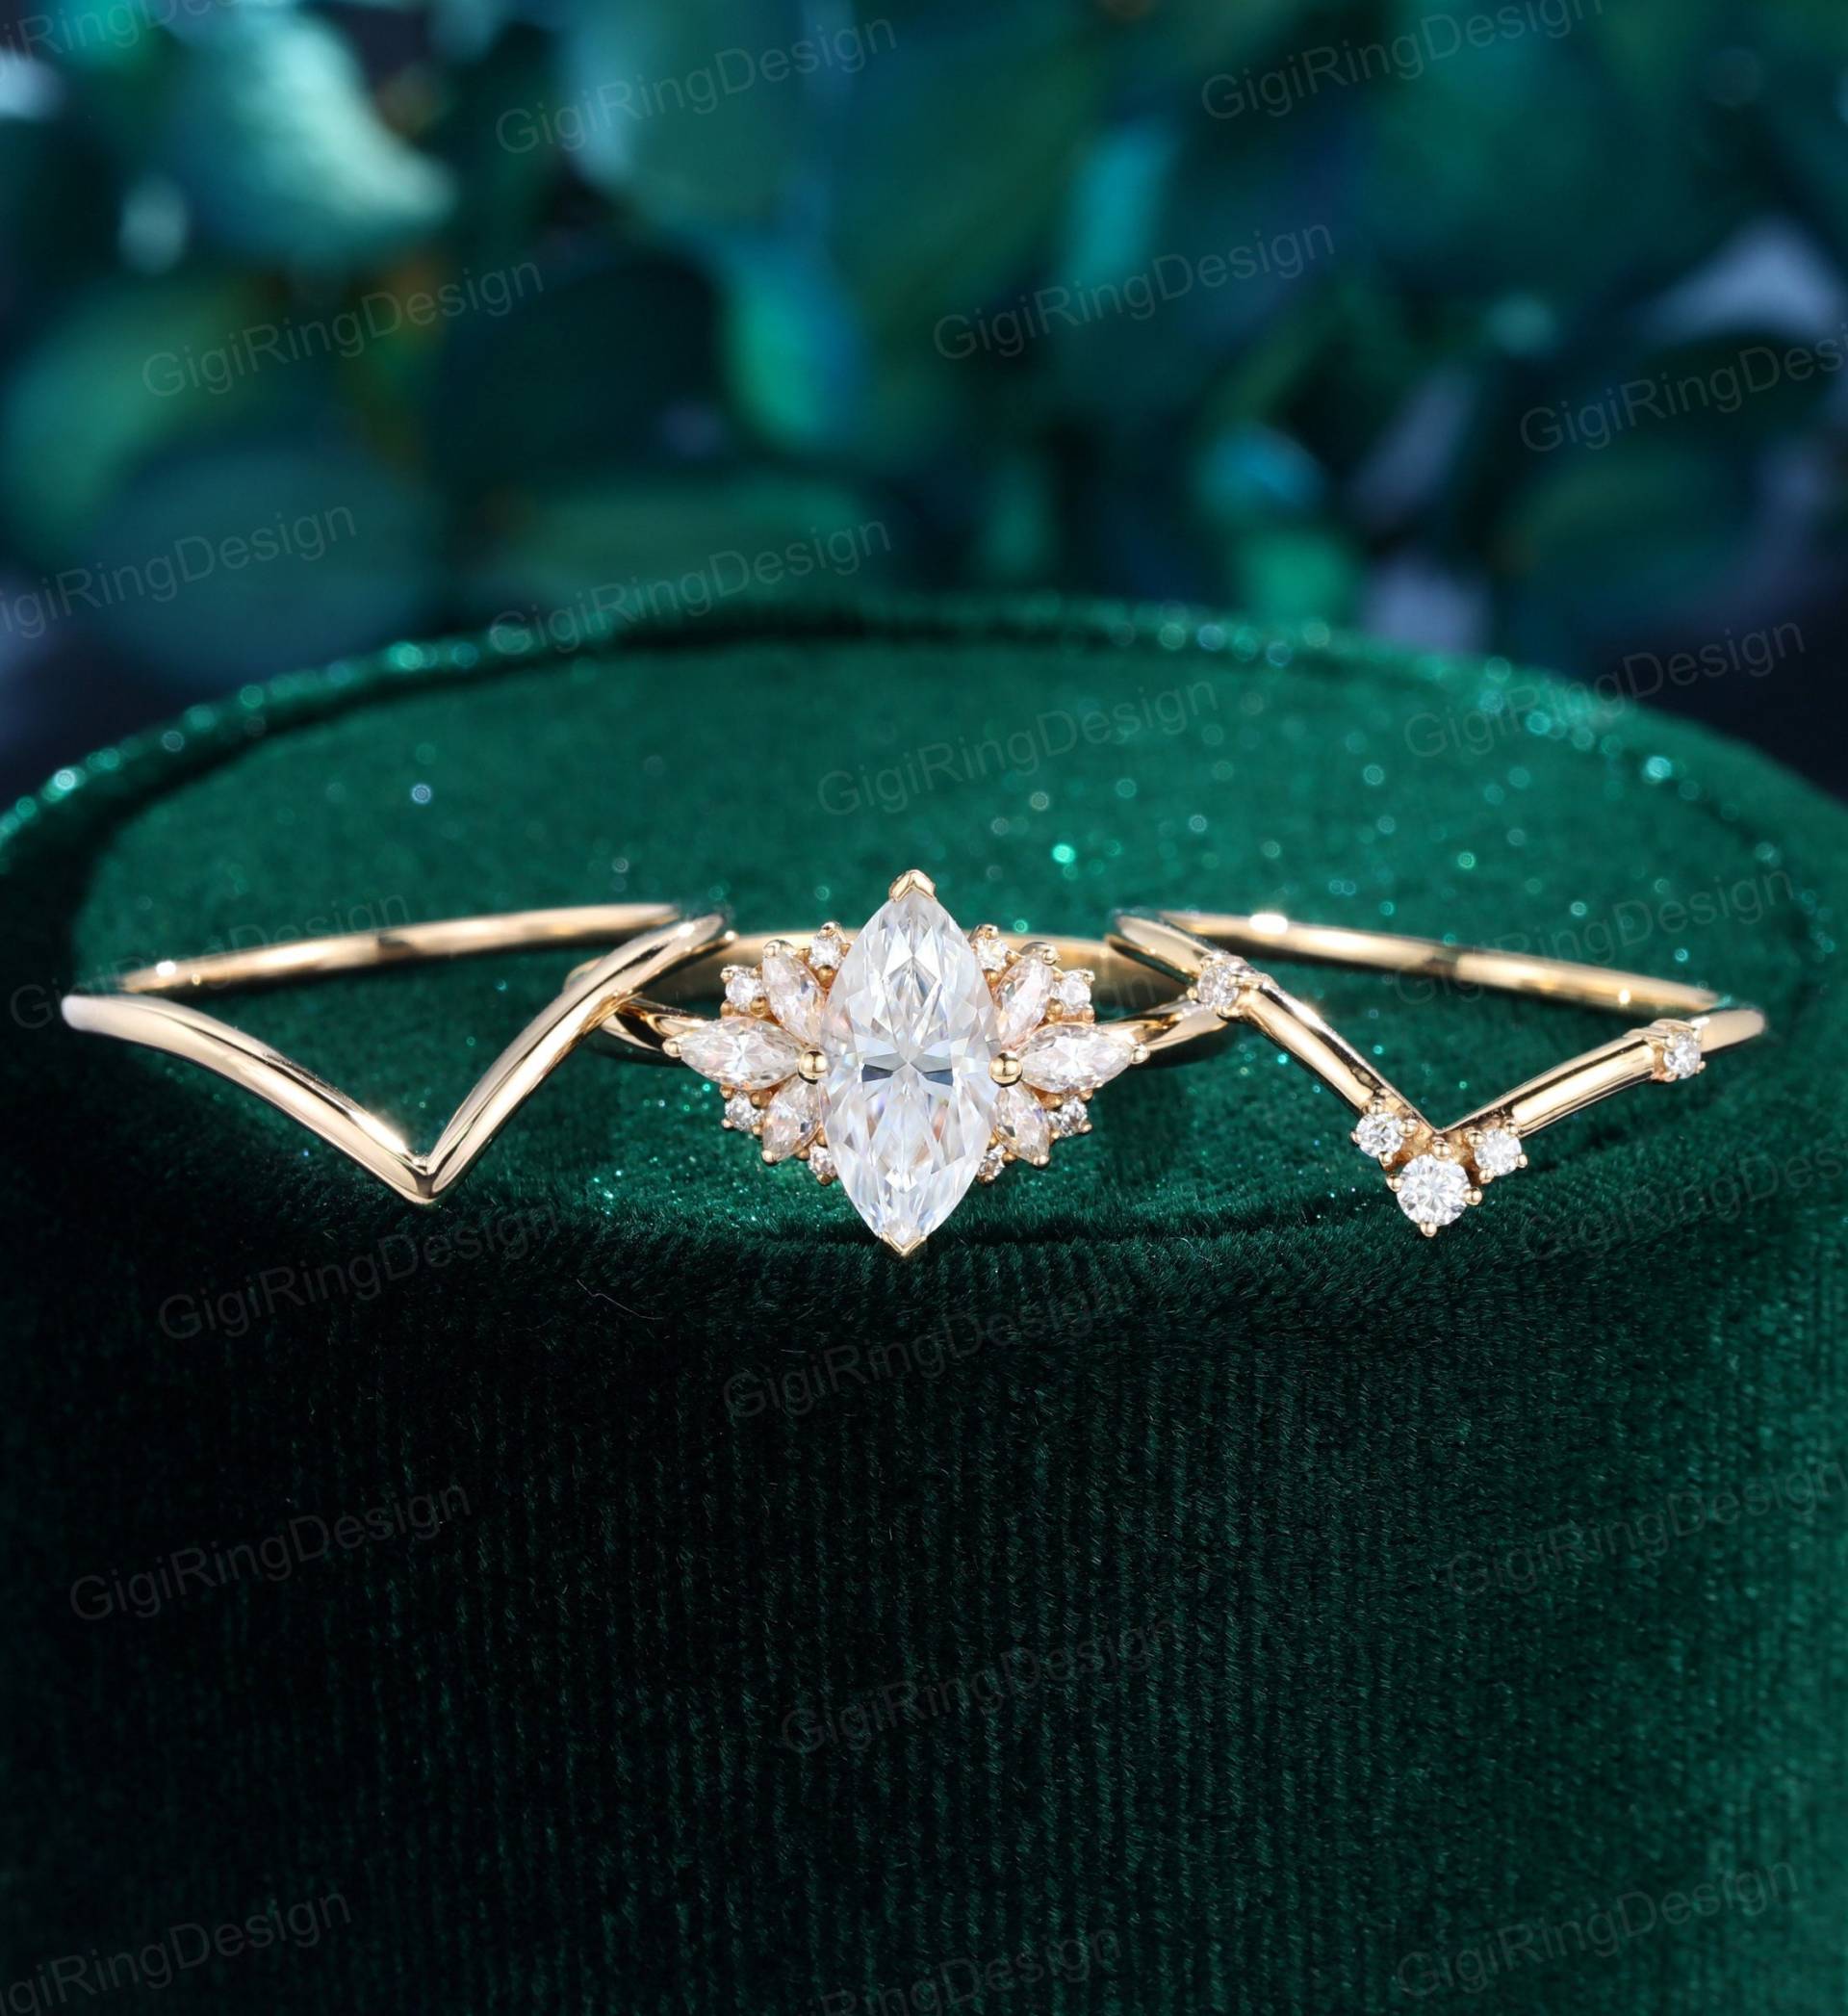 3stk Marquise Moissanit Verlobungsring Damen Unikat Vintage Gelbgold Diamant Set Art Deco Braut Versprechen Jahrestag von GigiRingDesign